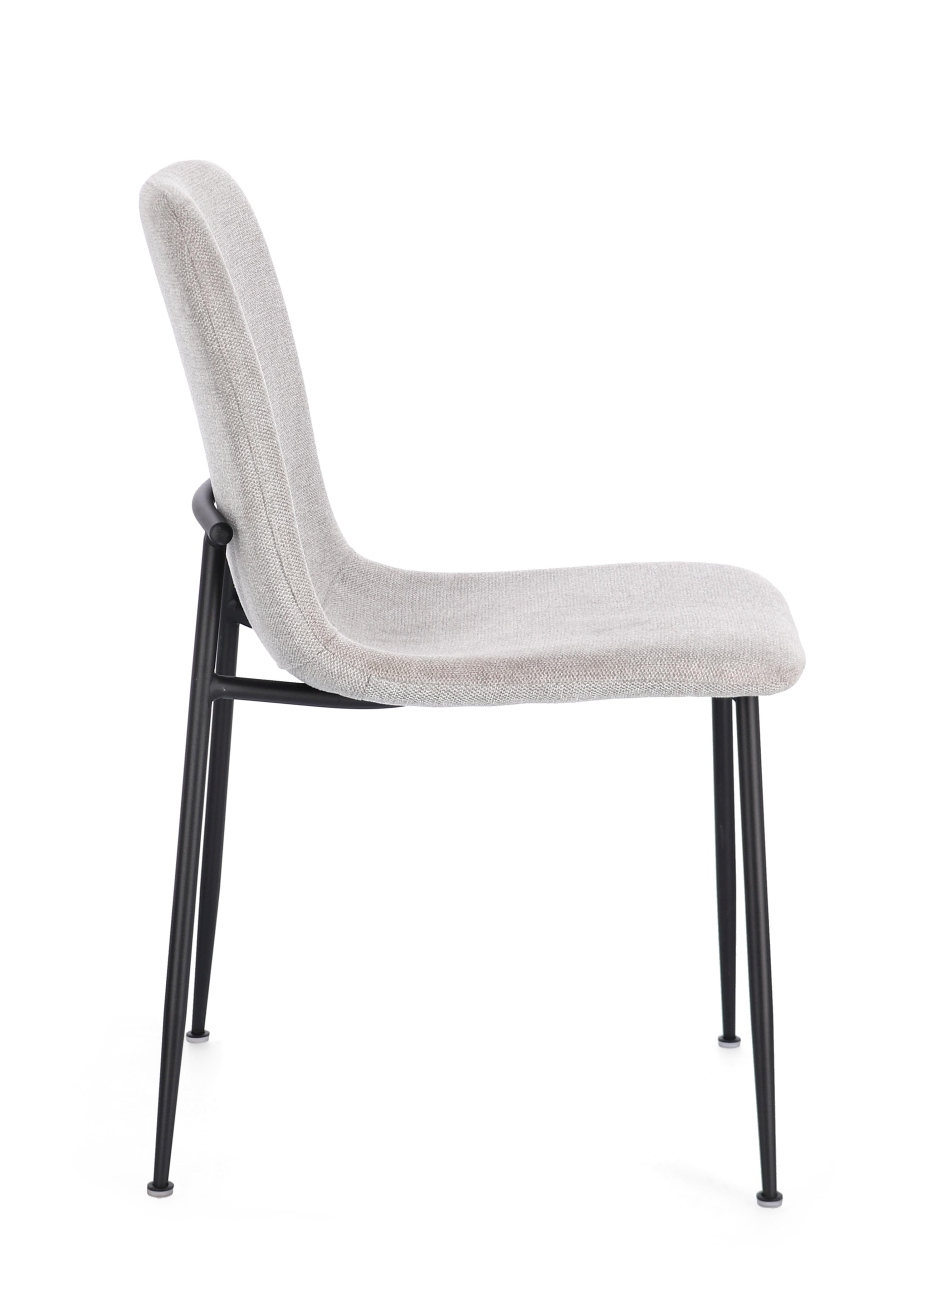 Der Esszimmerstuhl Rinas überzeugt mit seinem modernen Stil. Gefertigt wurde er aus Stoff, welcher einen hellgrauen Farbton besitzt. Das Gestell ist aus Metall und hat eine schwarze Farbe. Der Stuhl besitzt eine Sitzhöhe von 46 cm.